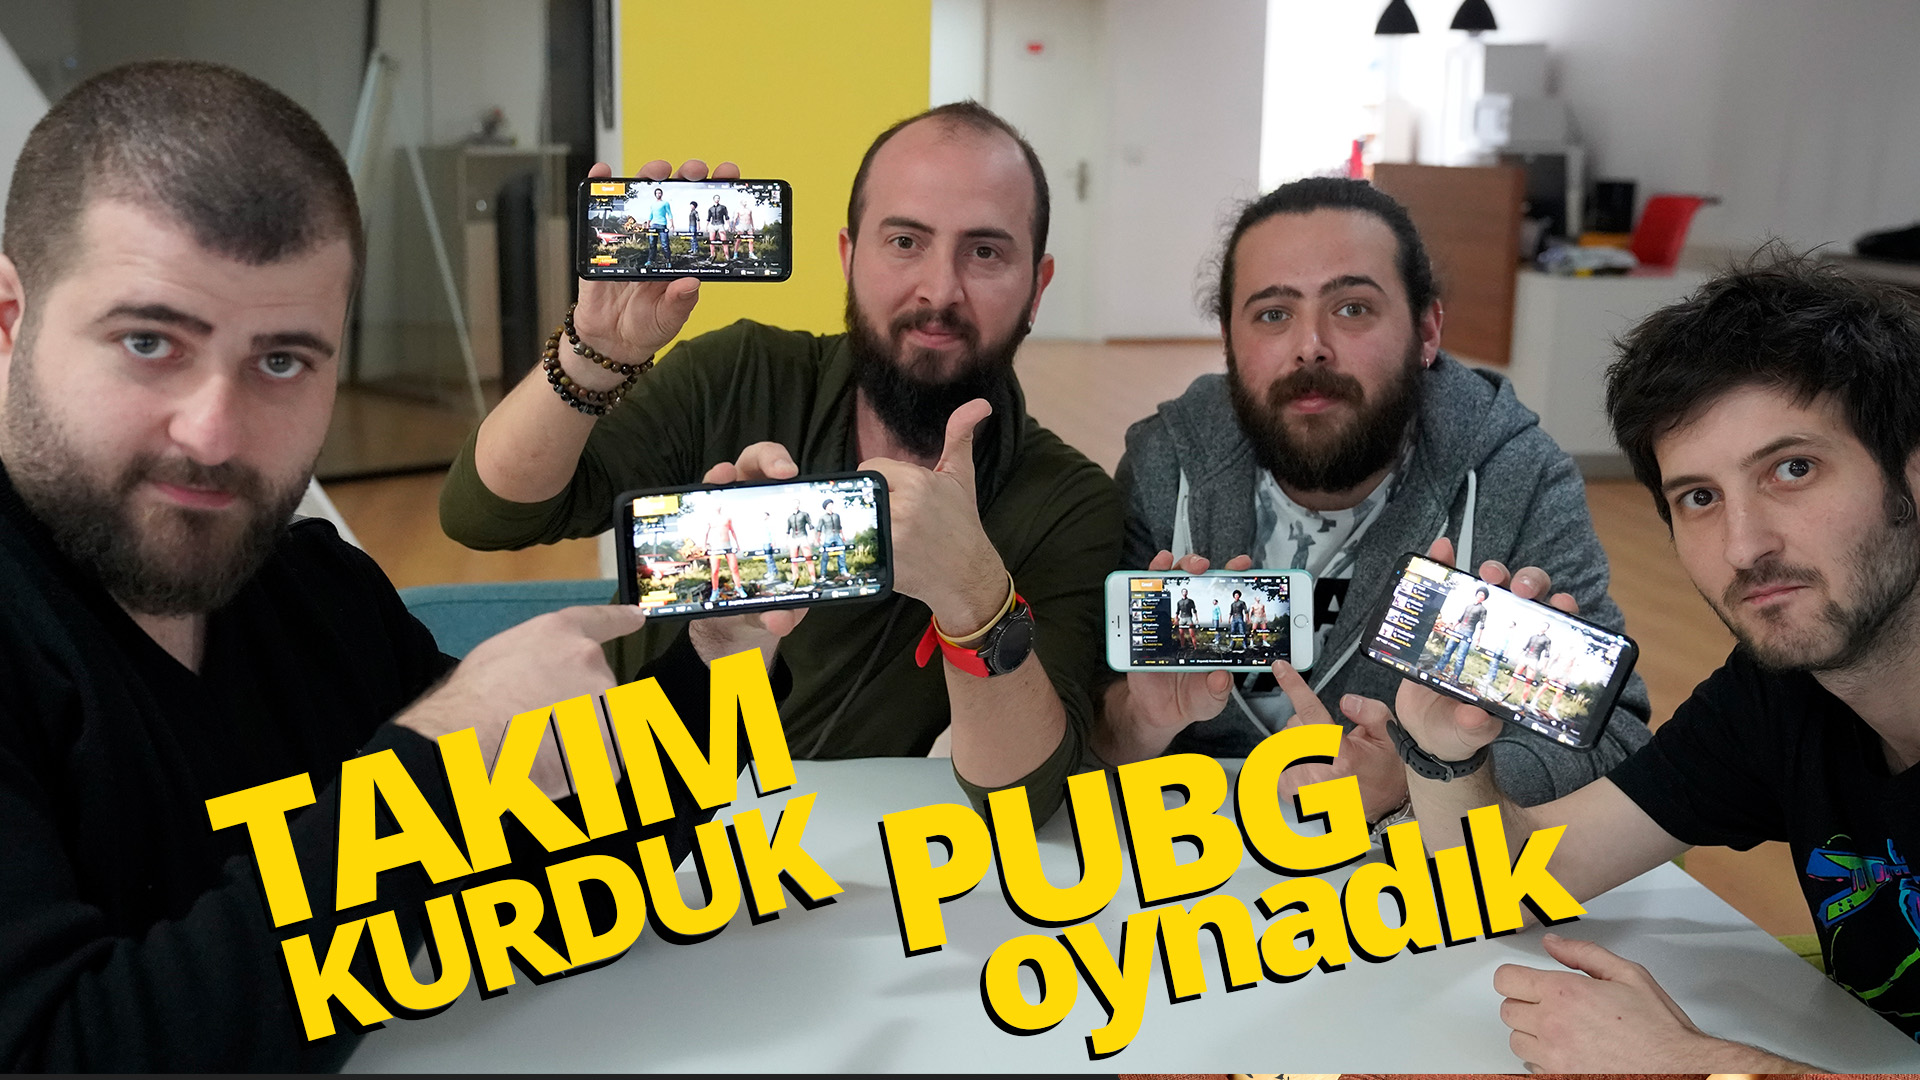 Takım kurduk, PUBG Mobile oynadık!